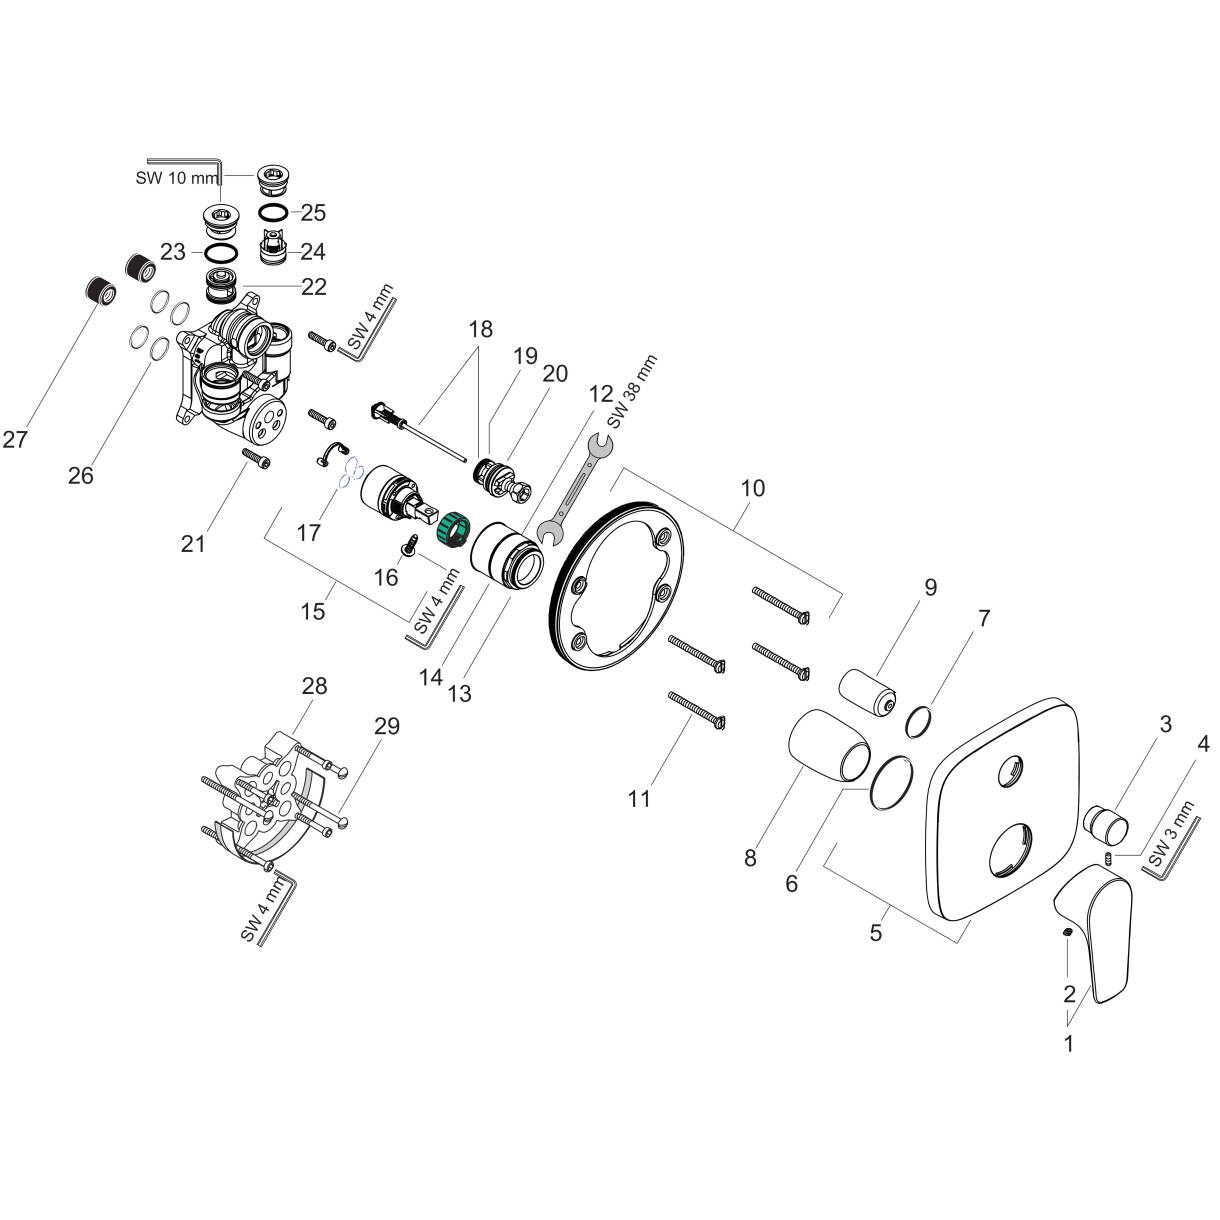 Bild von HANSGROHE Talis E Einhebel-Wannenmischer Unterputz mit integrierter Sicherungskombination nach EN1717 für iBox universal #71474670 - Mattschwarz